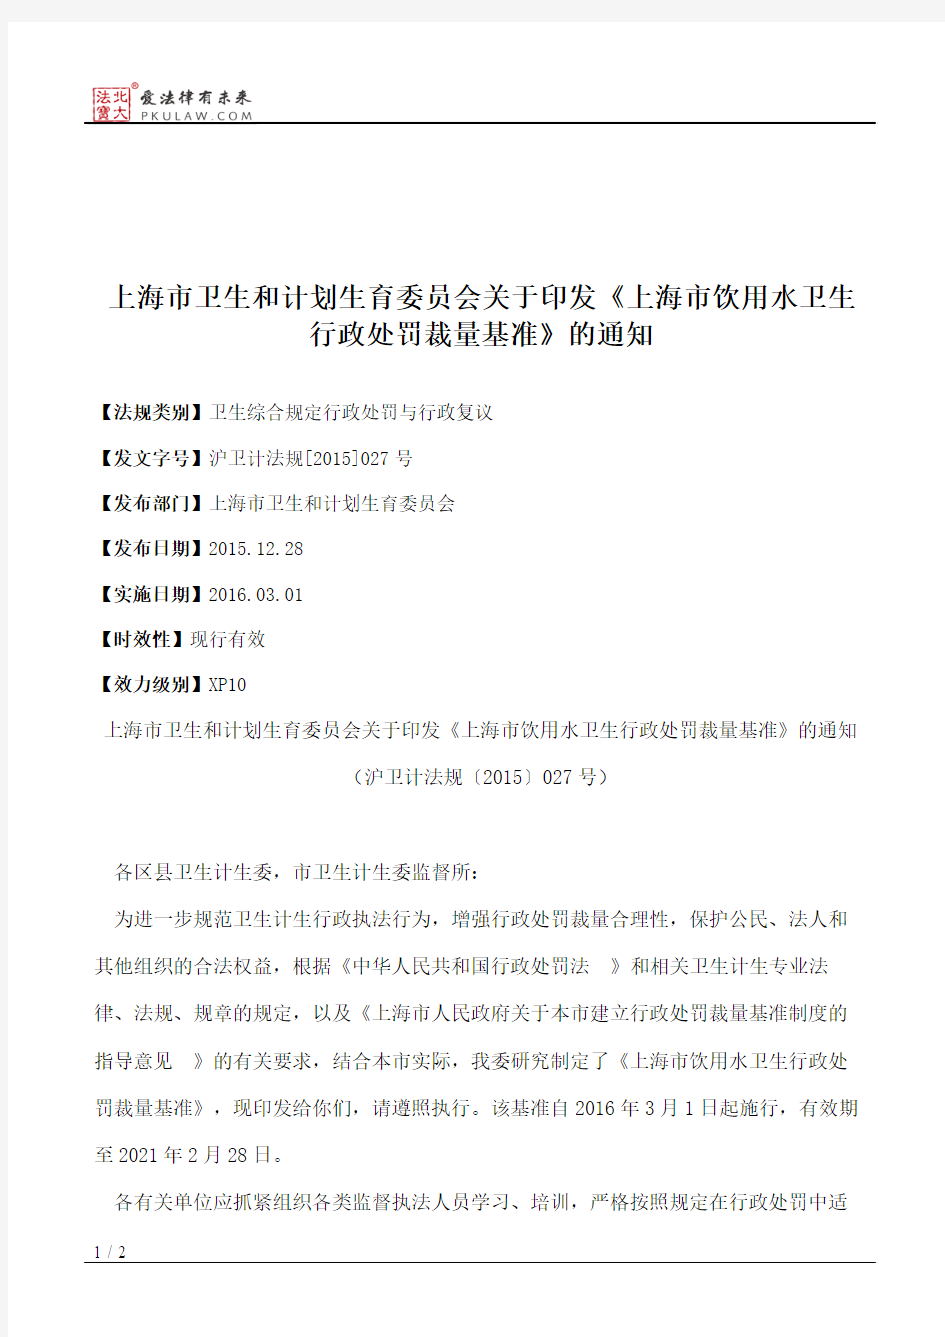 上海市卫生和计划生育委员会关于印发《上海市饮用水卫生行政处罚